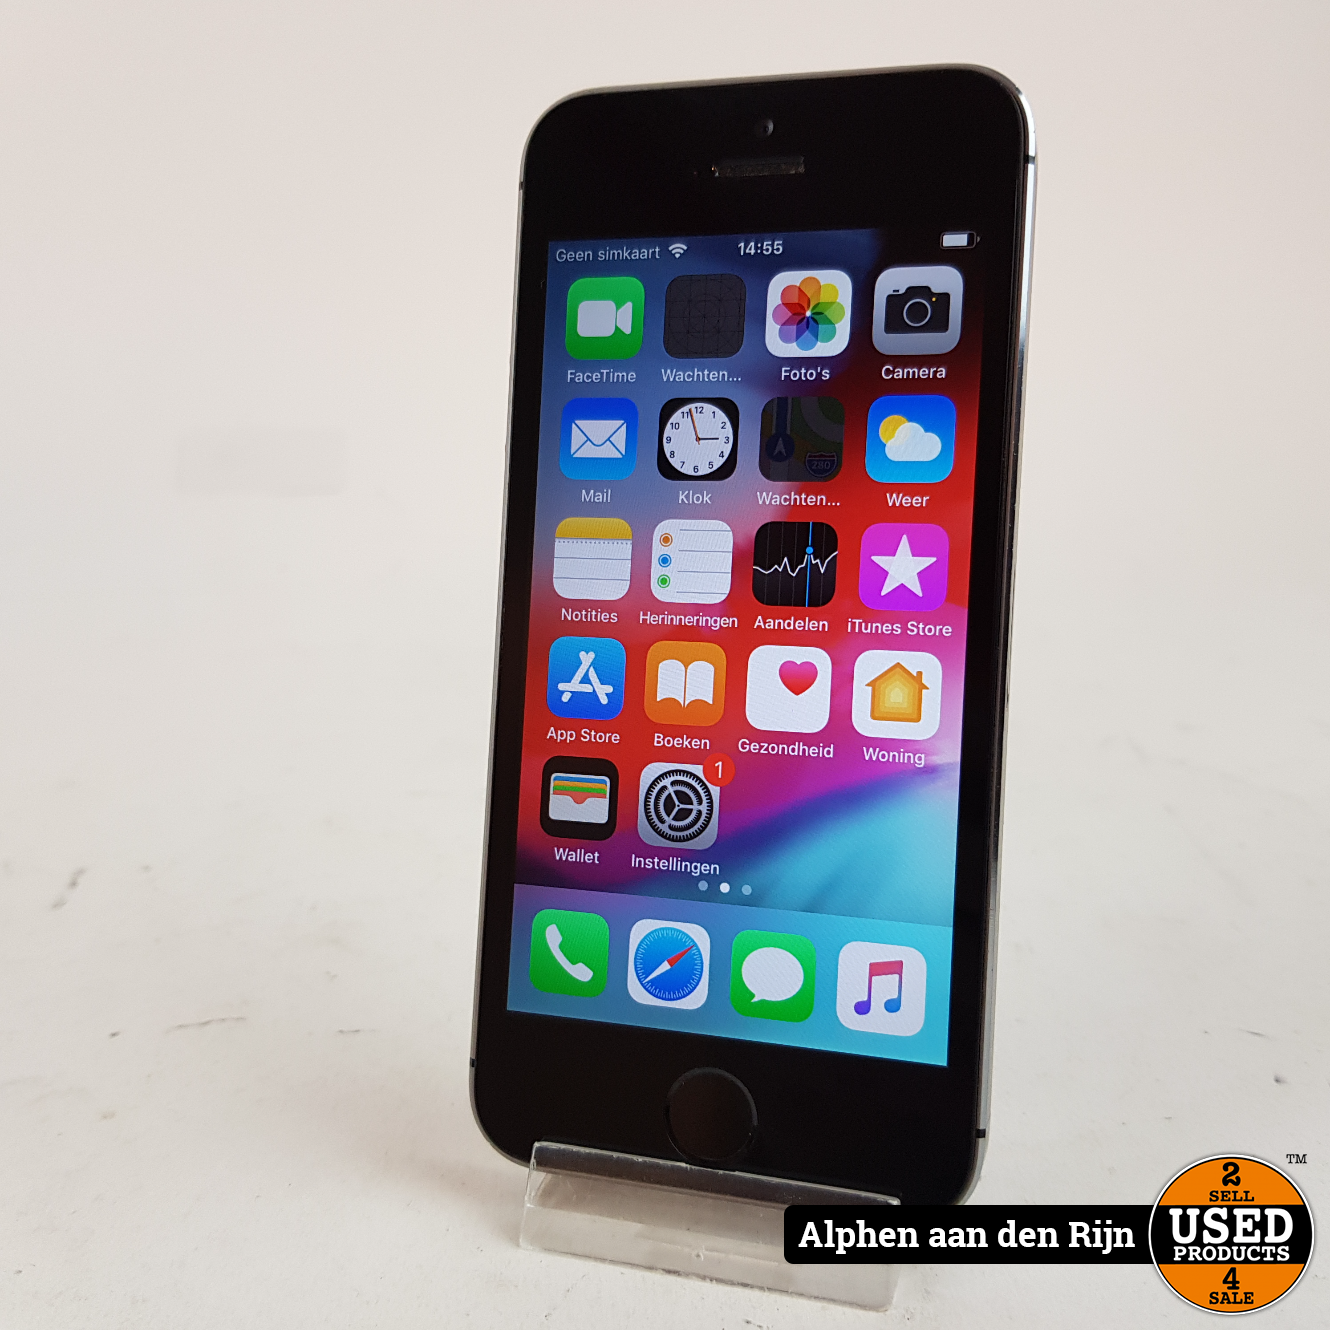 hoofdkussen Groet Bijna Apple iPhone 5s 16gb Space gray - Used Products Alphen aan den Rijn